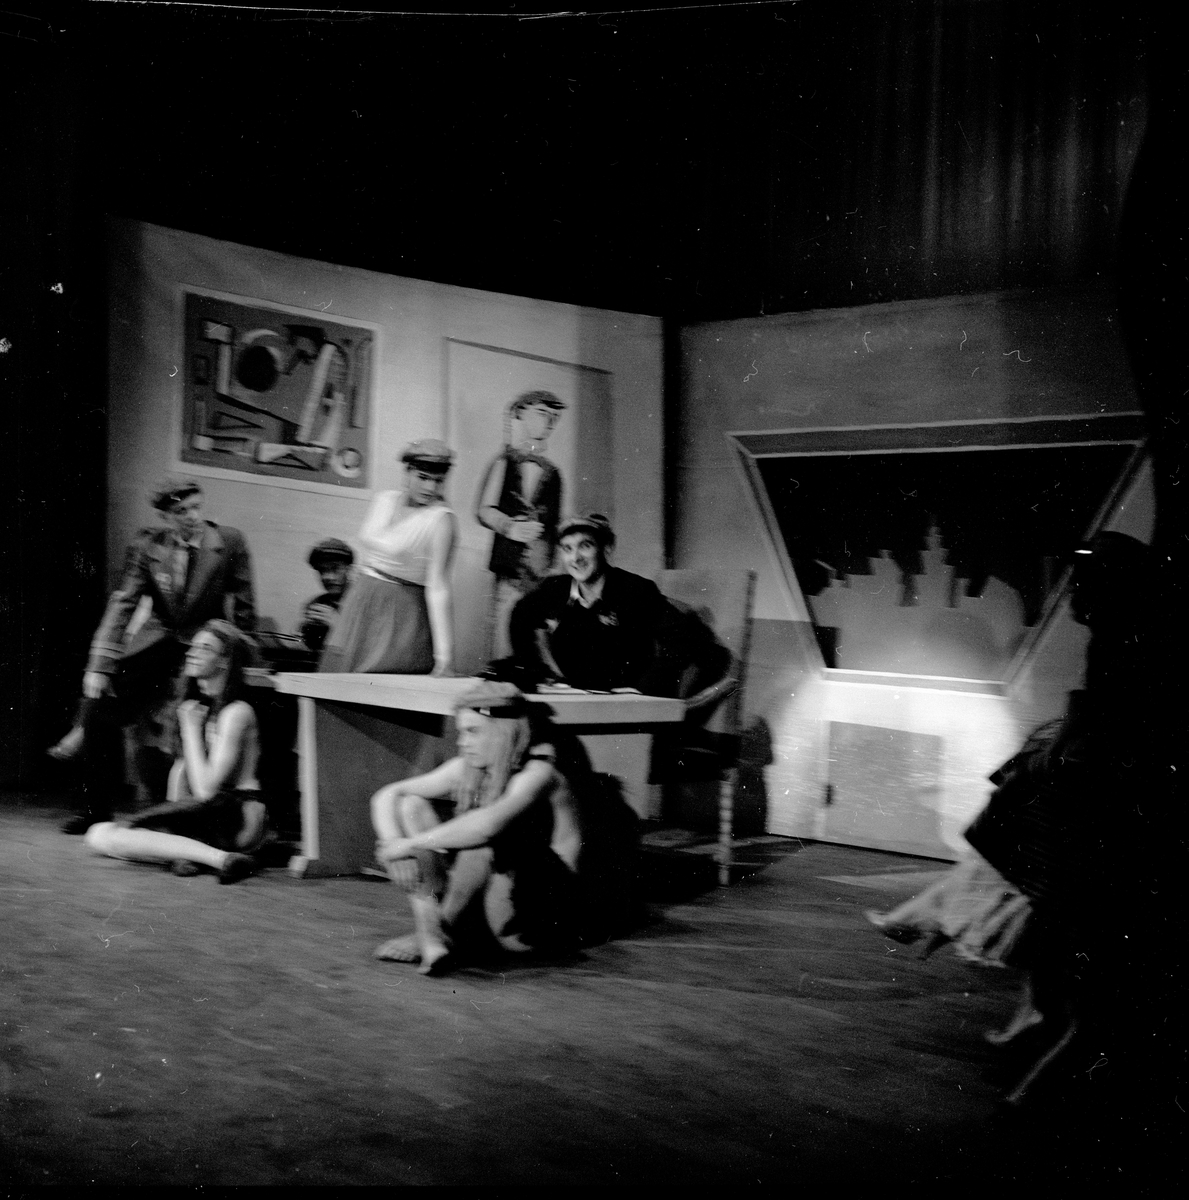 Oslo, våren 1958, glimt fra russerevyen, antatt spillested Edderkoppen Teater.